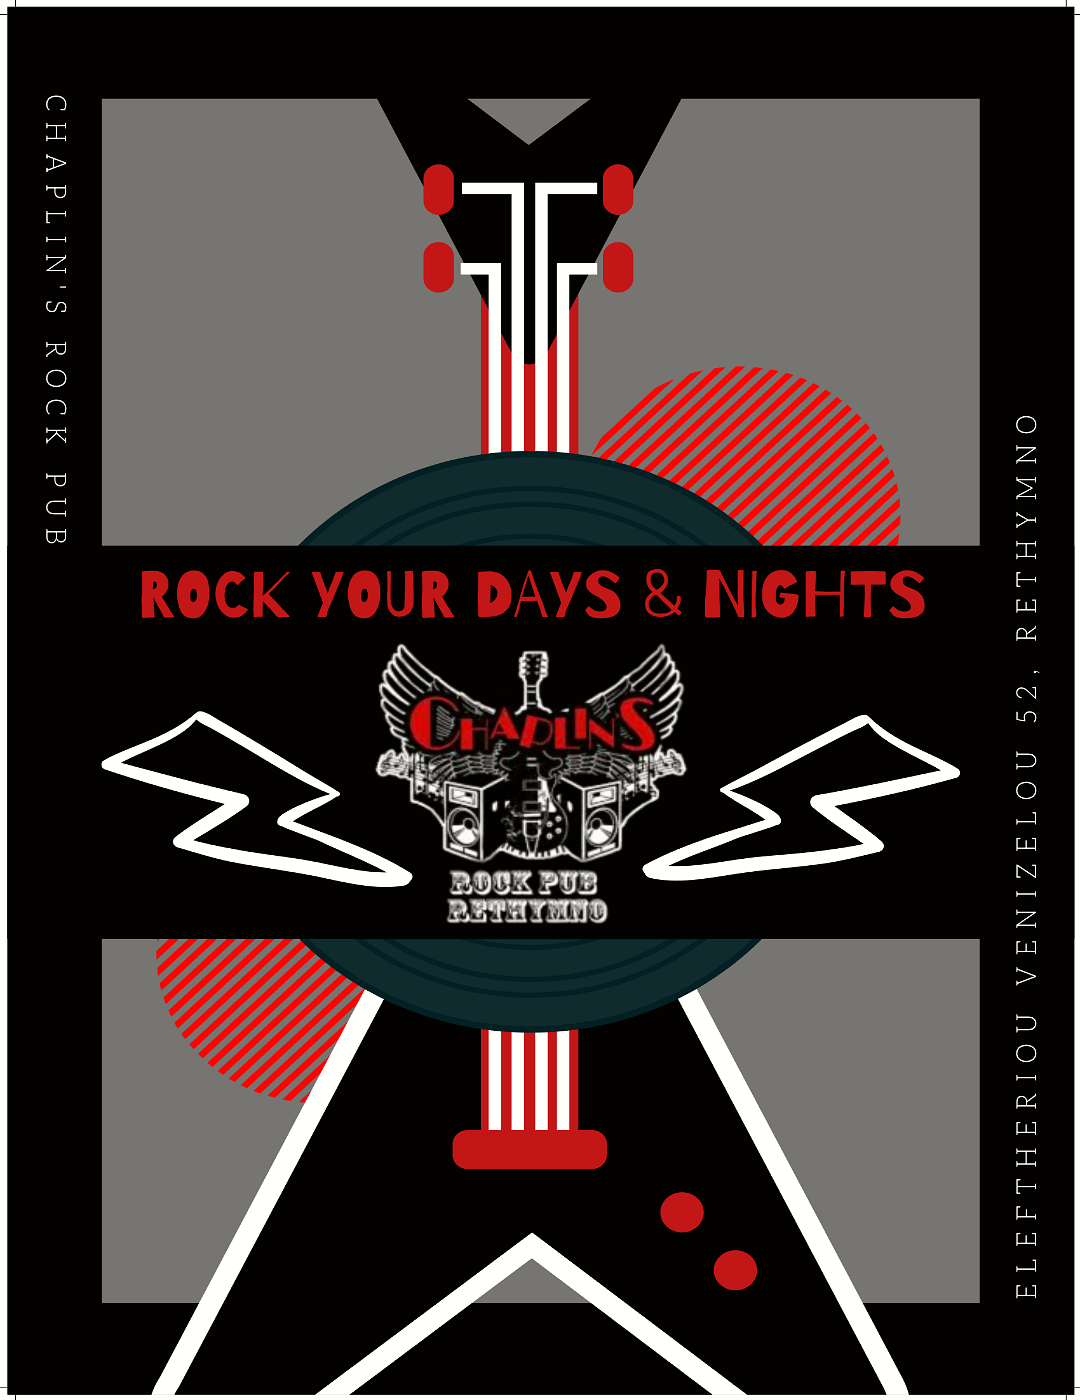 Chaplin's rock pub - social media promo poster